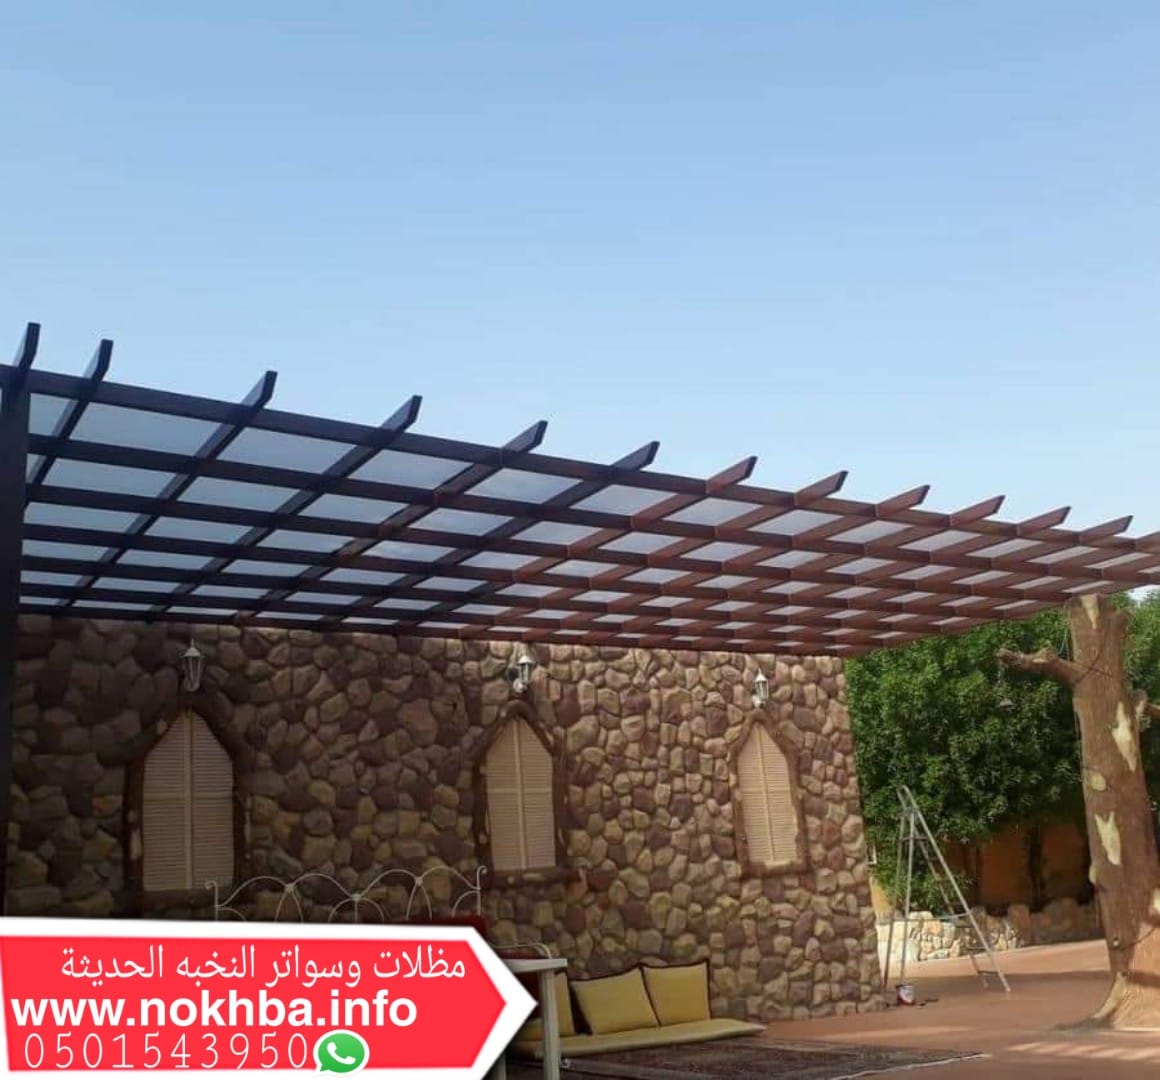 مظلات خشبية الرياض , تنسيق حدائق , تصميم حدائق 0501543950